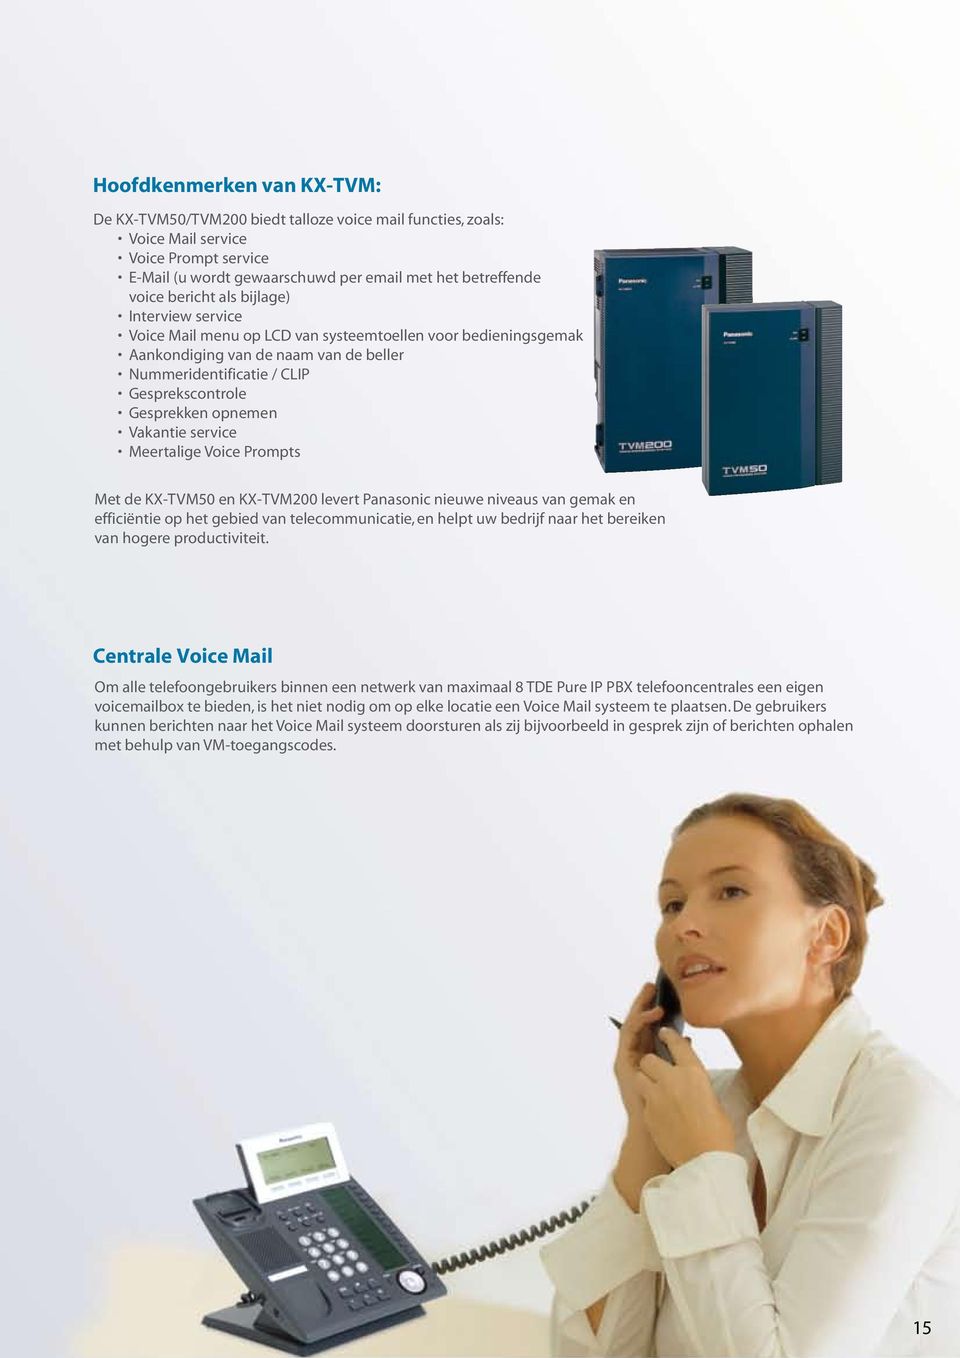 opnemen Vakantie service Meertalige Voice Prompts Met de KX-TVM50 en KX-TVM200 levert Panasonic nieuwe niveaus van gemak en efficiëntie op het gebied van telecommunicatie, en helpt uw bedrijf naar